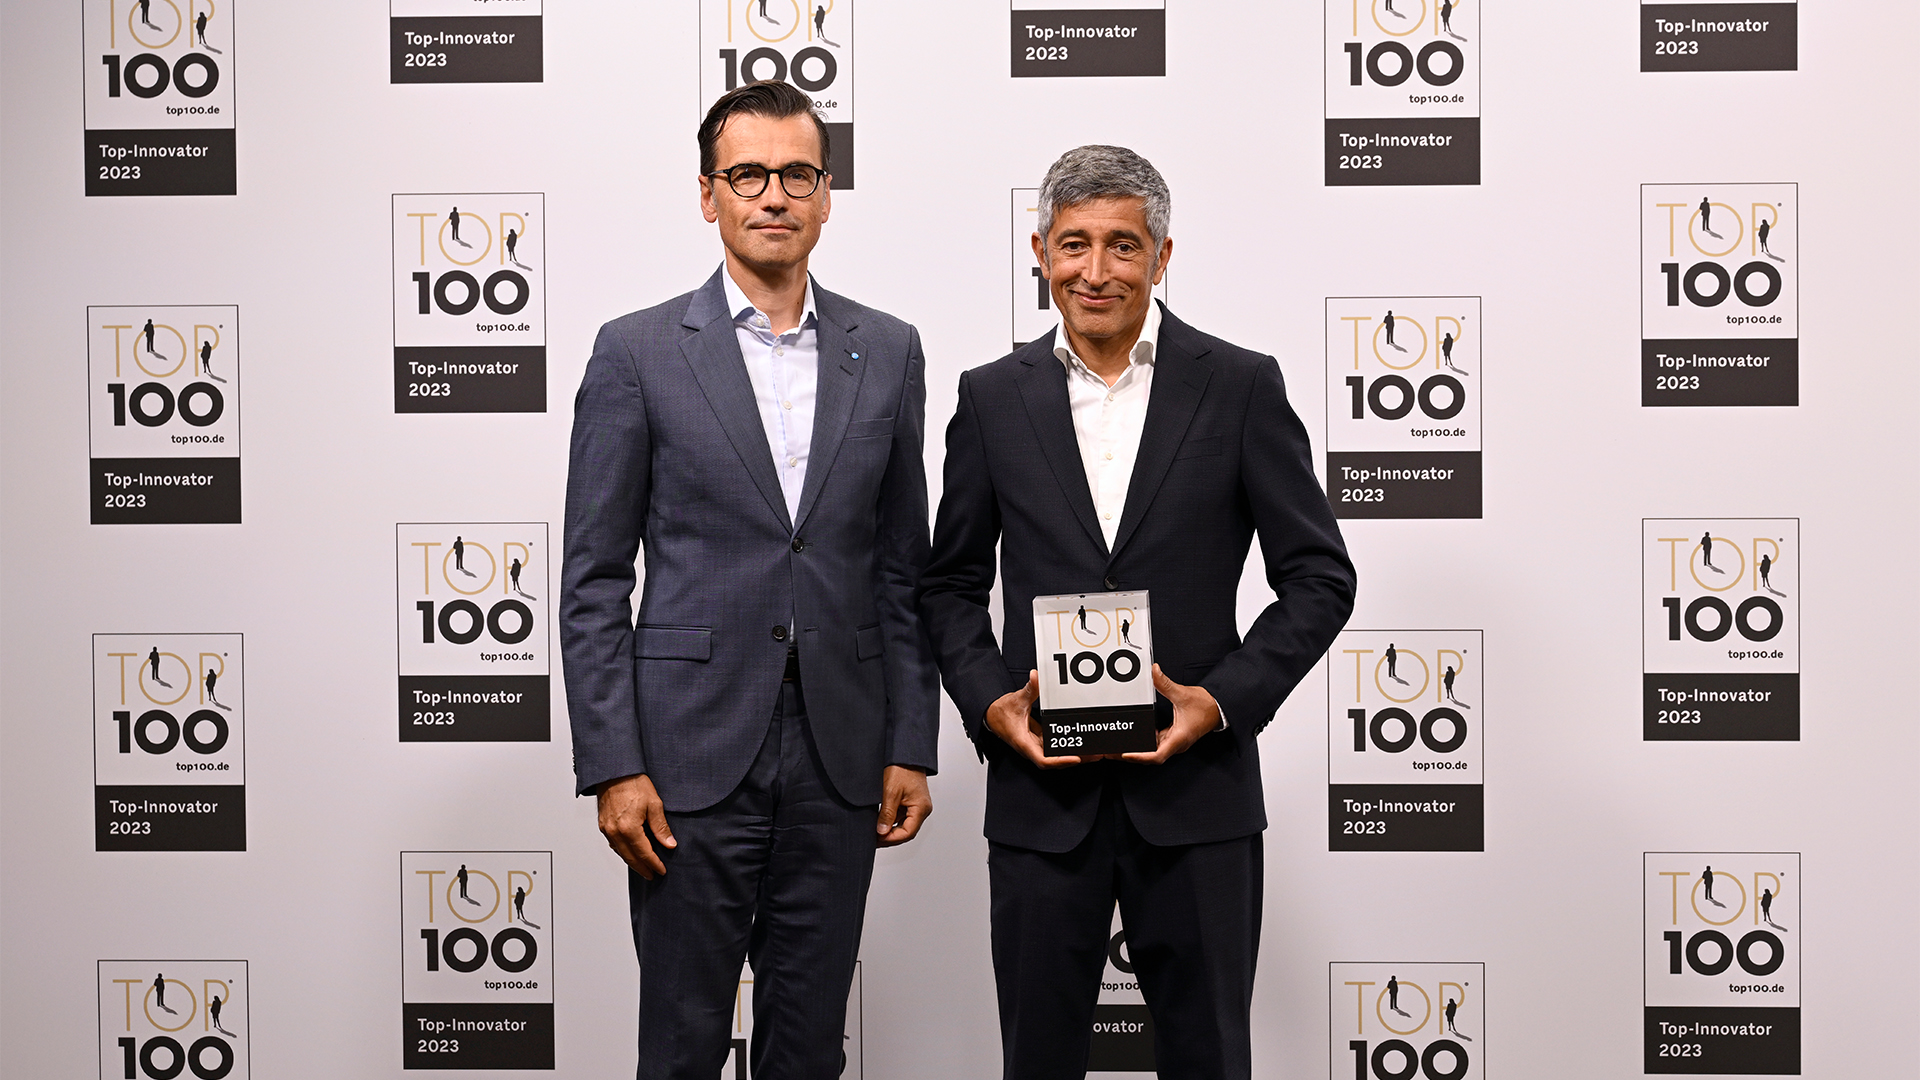 TOP 100-Preisverleihung: Brasseler nimmt Auszeichnung entgegen